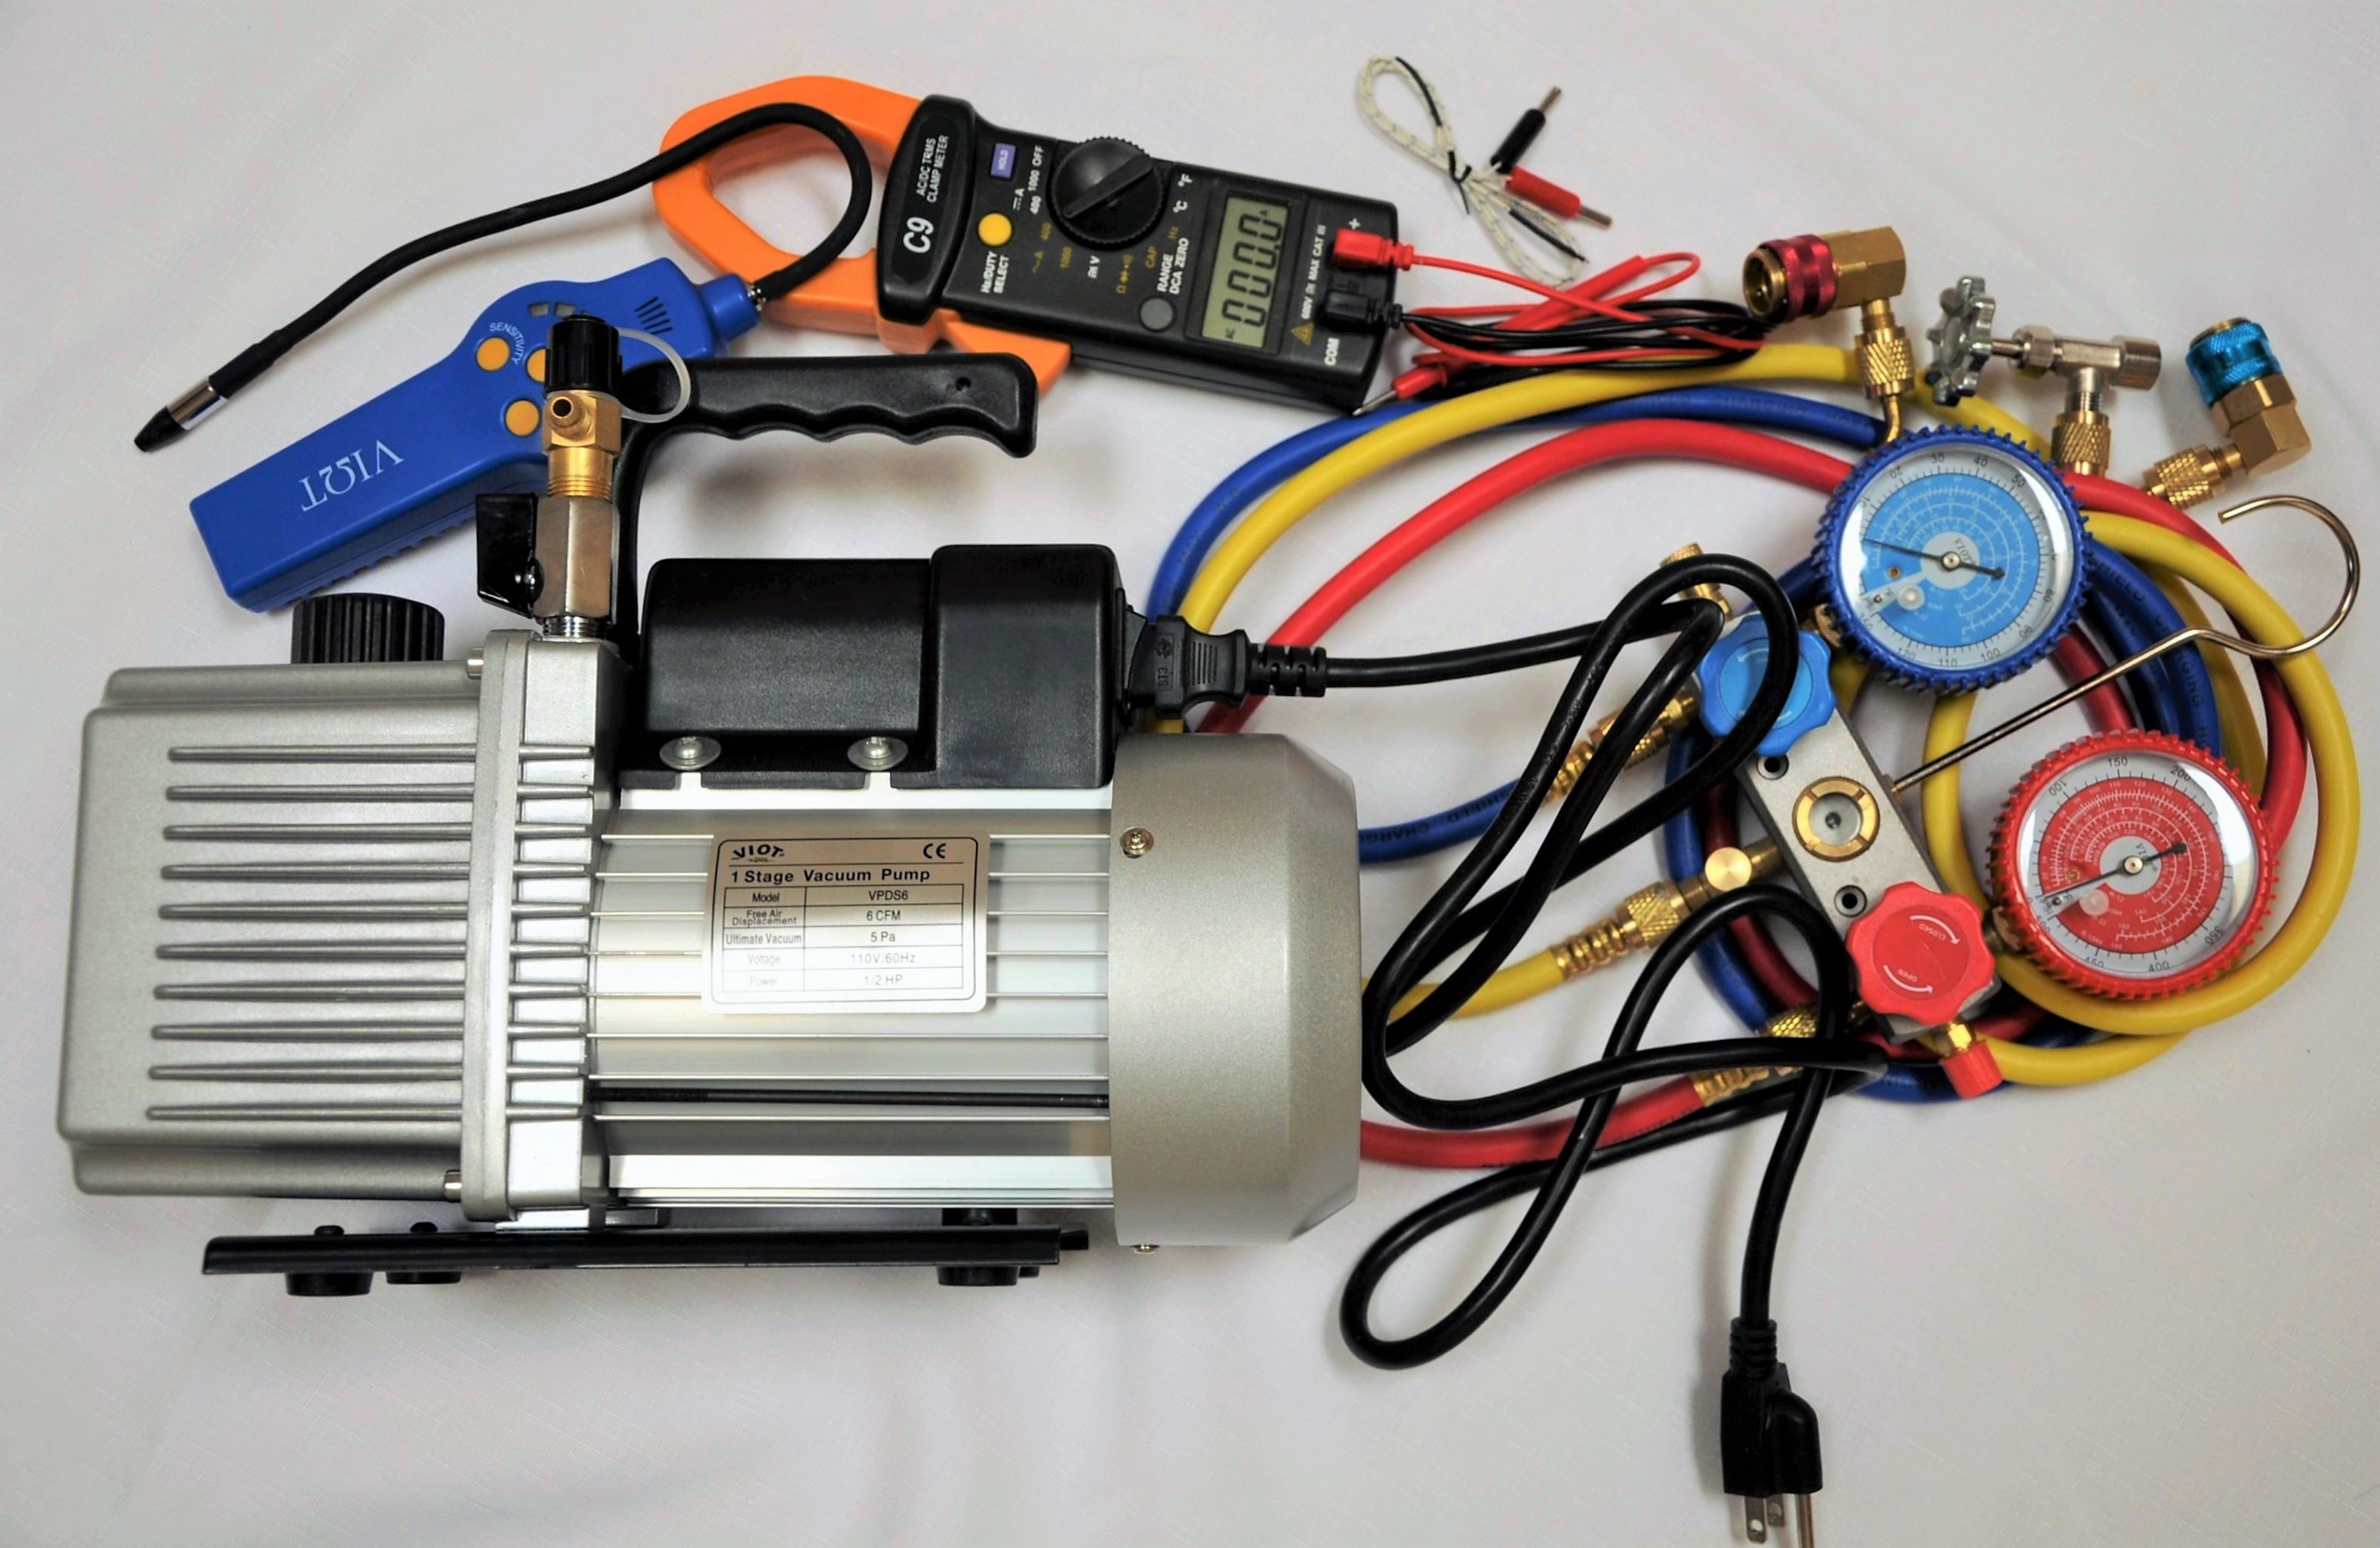 HVAC Tool Set Kit5: 2-Stage Deep Vacuum Pump VPD5(upgraded)+Clamp Meter C9+Refrigerant Leak Detector